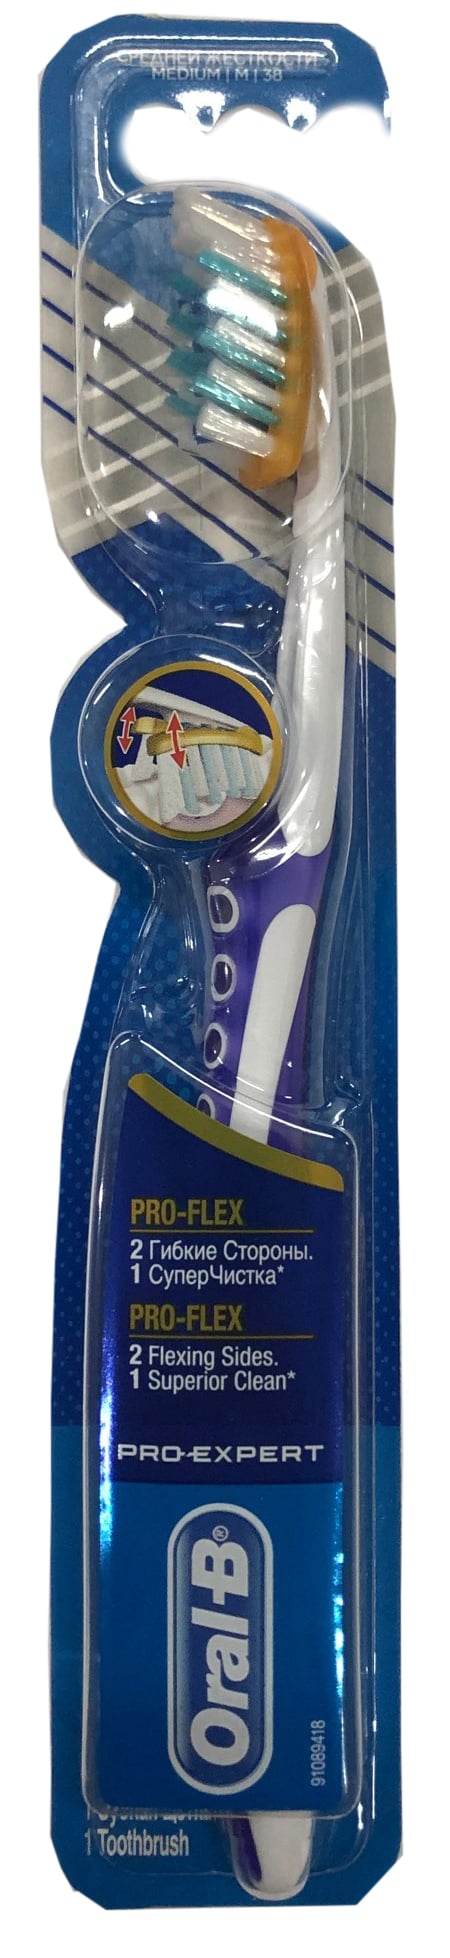 Зубна щітка Oral-B Pro-Expert Pro-Flex, середня, фіолетовий - фото 1